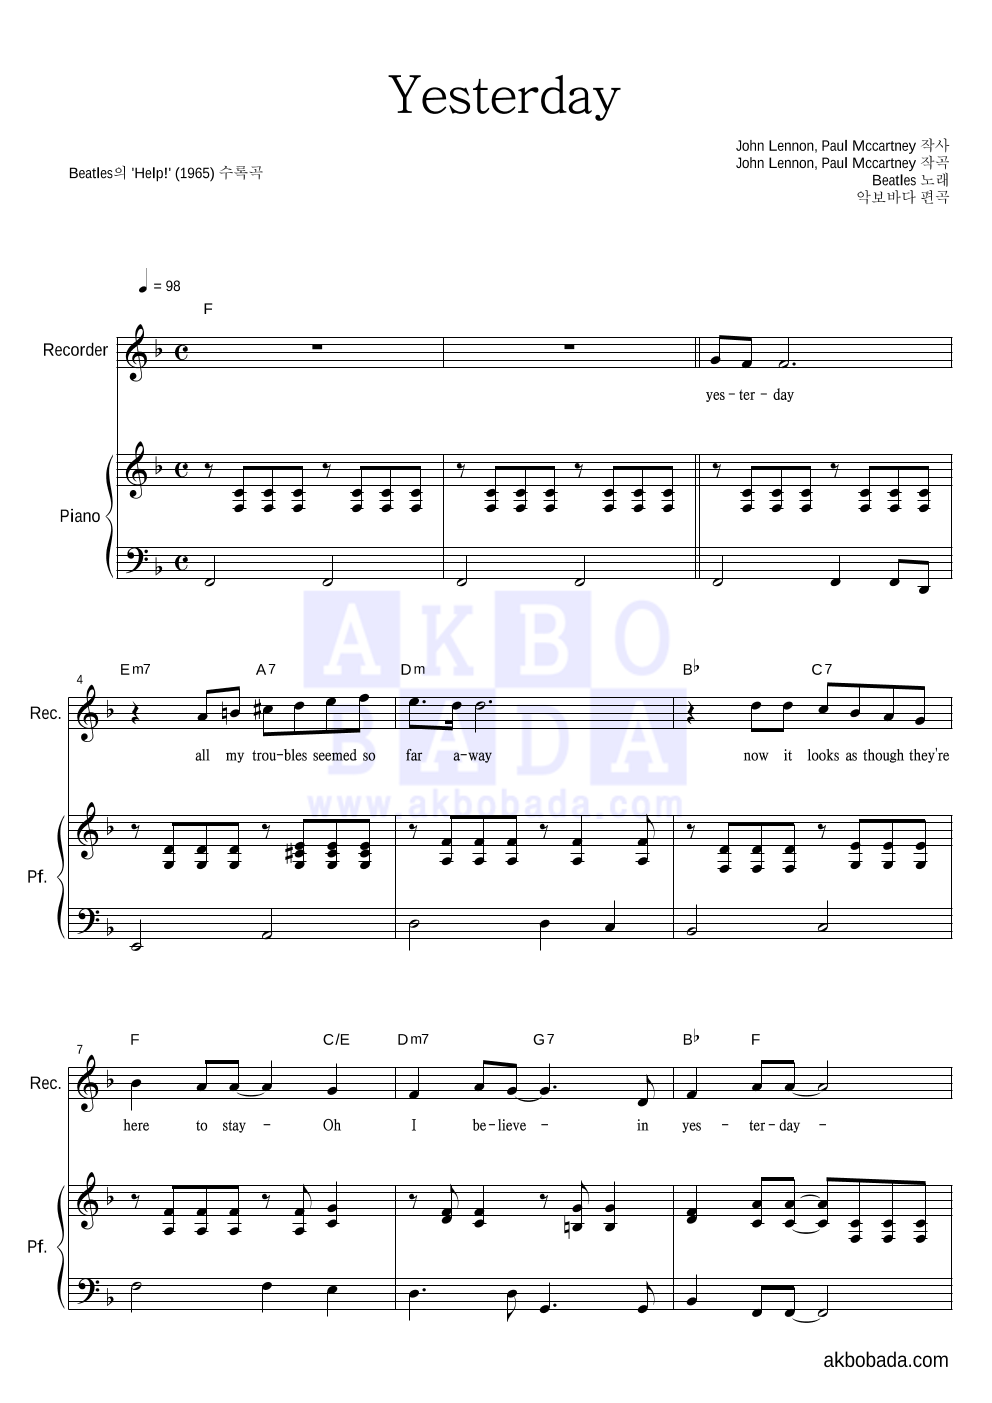 Beatles - Yesterday 리코더&피아노 악보 